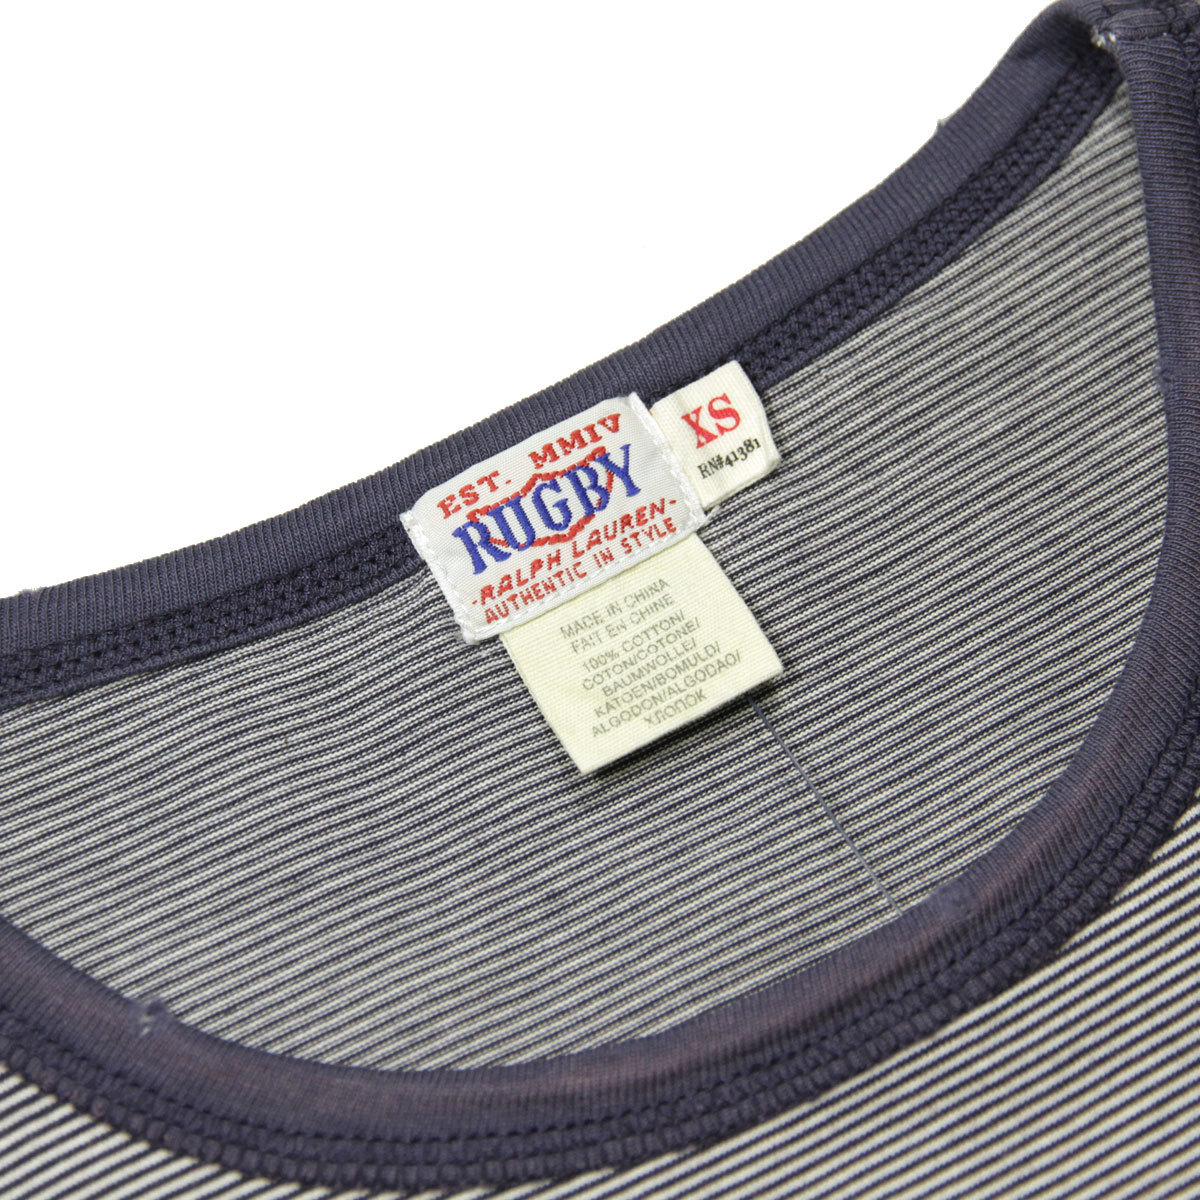 ラルフローレンラグビー RUGBY RALPH LAUREN 正規品 メンズ 半袖Tシャツ S/S Blue Micro-Stripe Tee ホワイトブラック